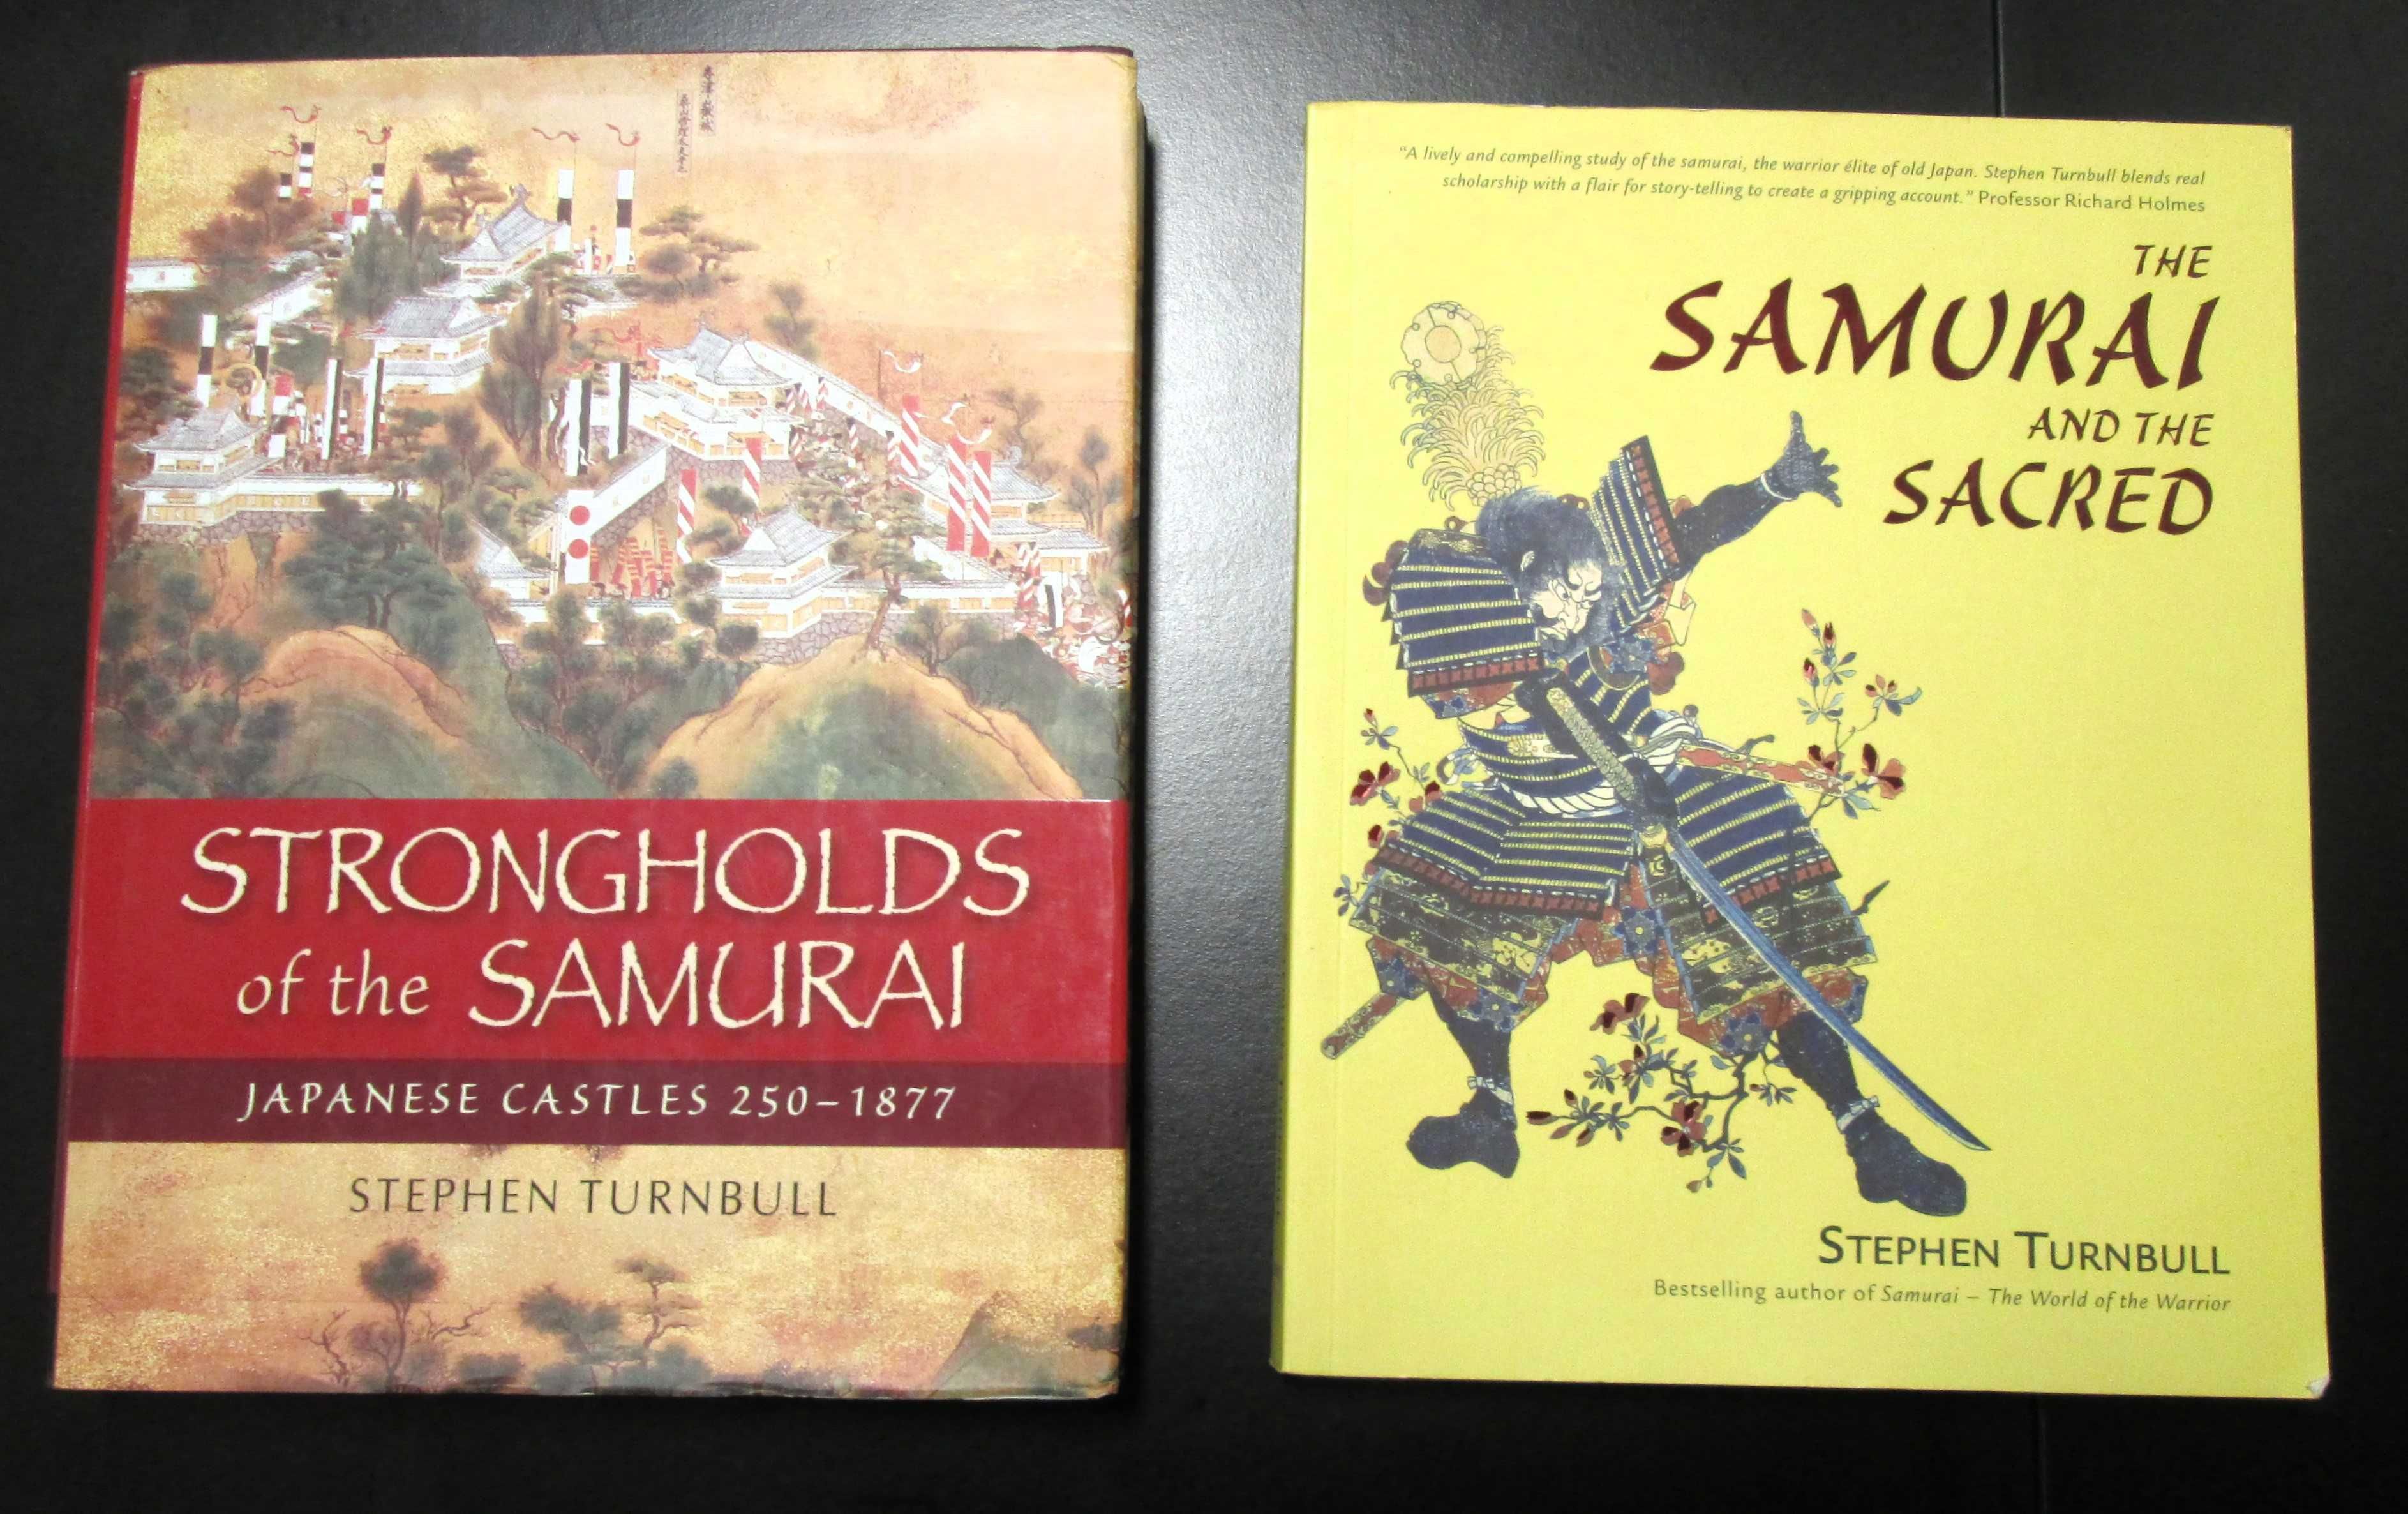 Samurais - Vida, costumes, sociedade, fortificações